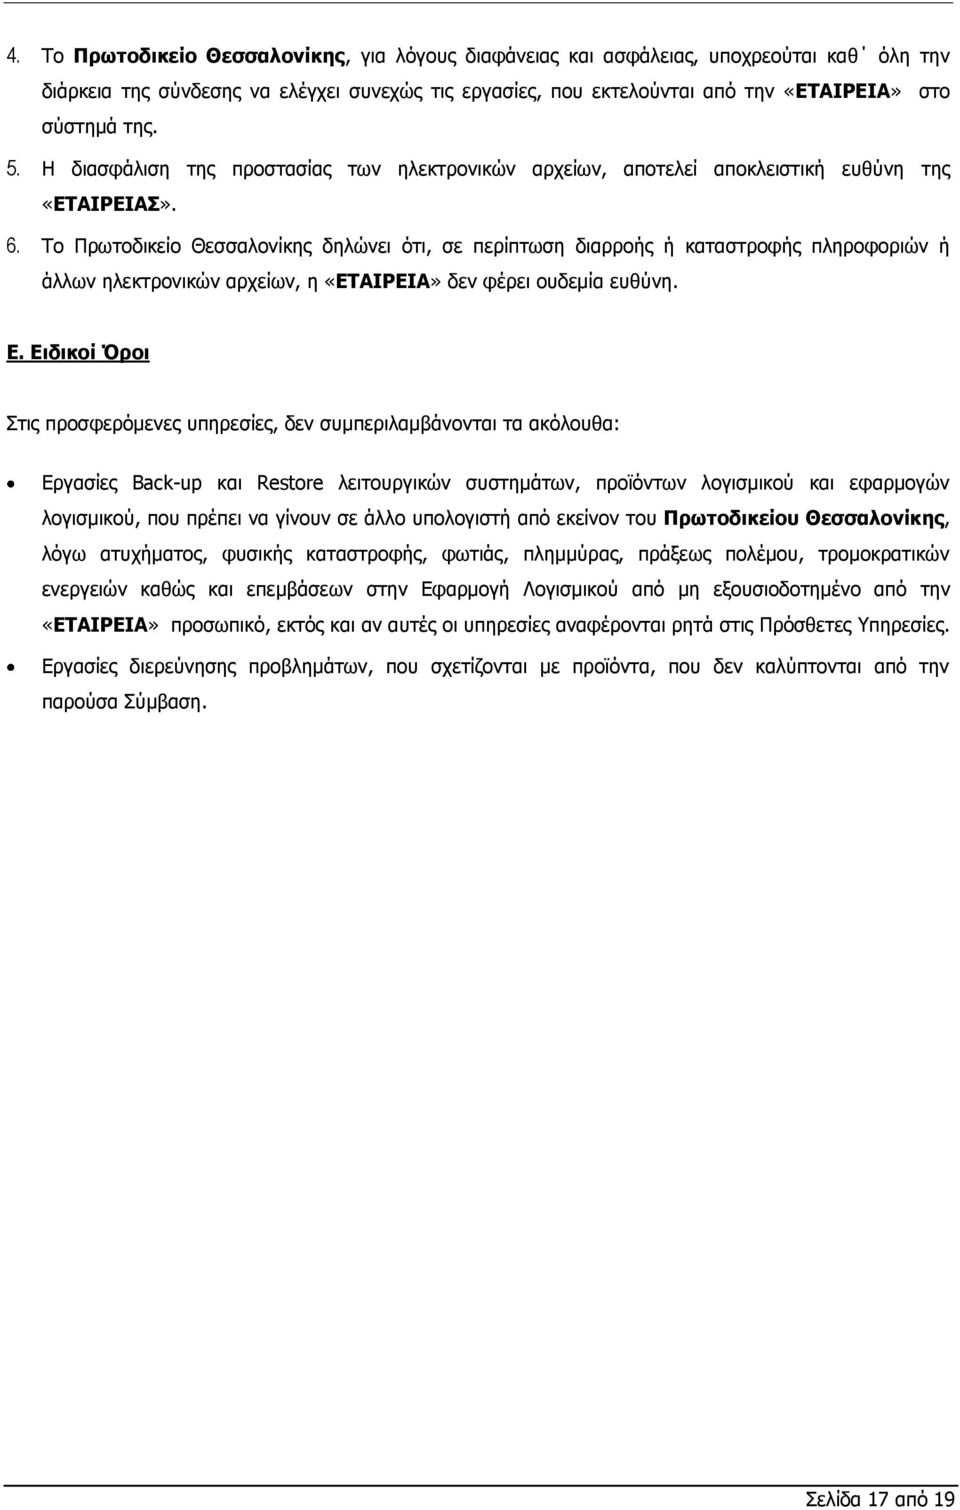 Το Πρωτοδικείο Θεσσαλονίκης δηλώνει ότι, σε περίπτωση διαρροής ή καταστροφής πληροφοριών ή άλλων ηλεκτρονικών αρχείων, η «ΕΤΑΙΡΕΙΑ» δεν φέρει ουδεμία ευθύνη. Ε.